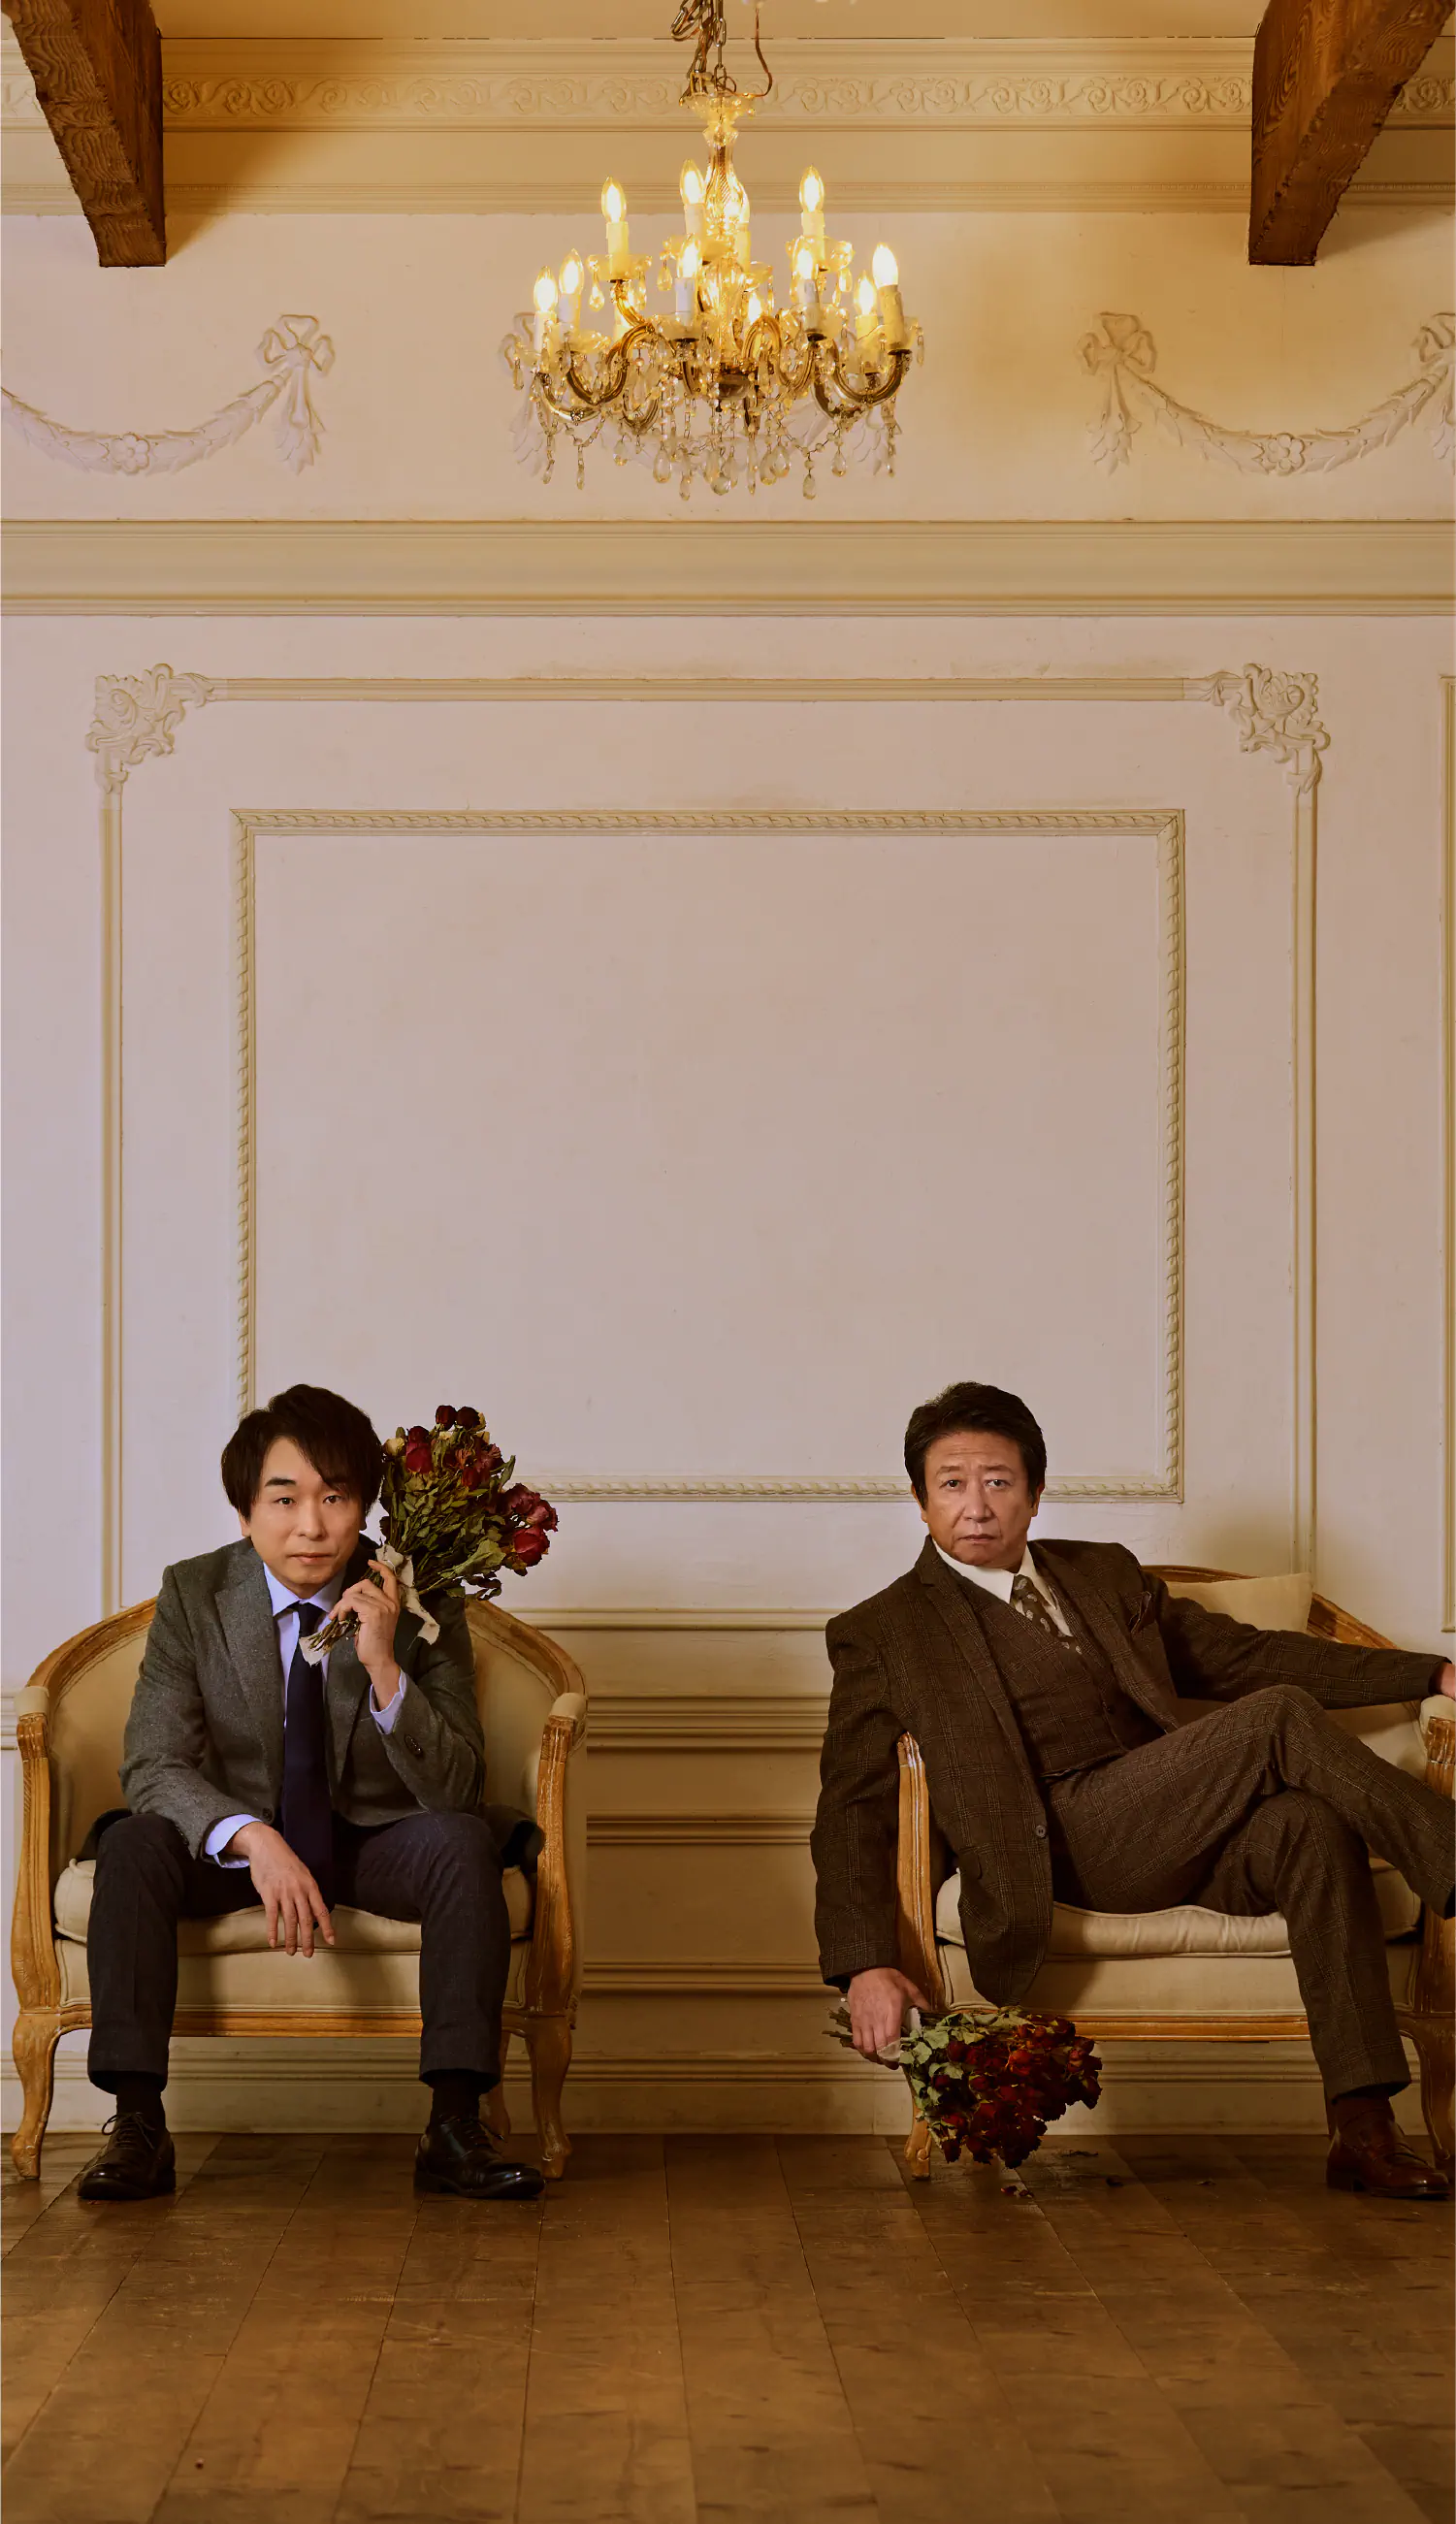 井上和彦と関智一が洋館の中で、ばらの花束を手にソファーに座っている写真